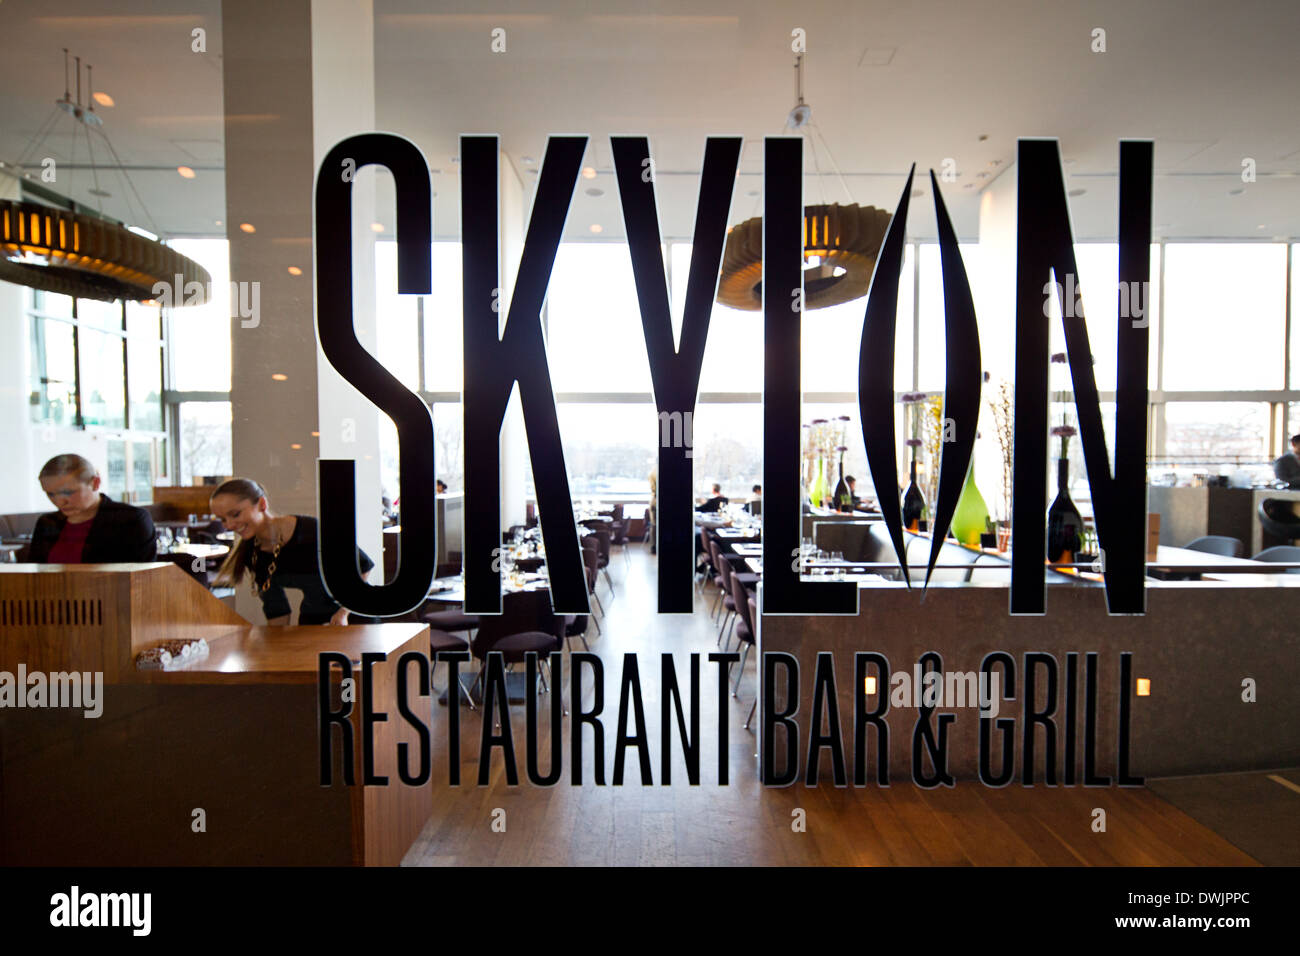 El Skylon restaurante en la azotea, bar & grill, dentro del Royal Festival Hall. El complejo Southbank de Londres. Foto de stock